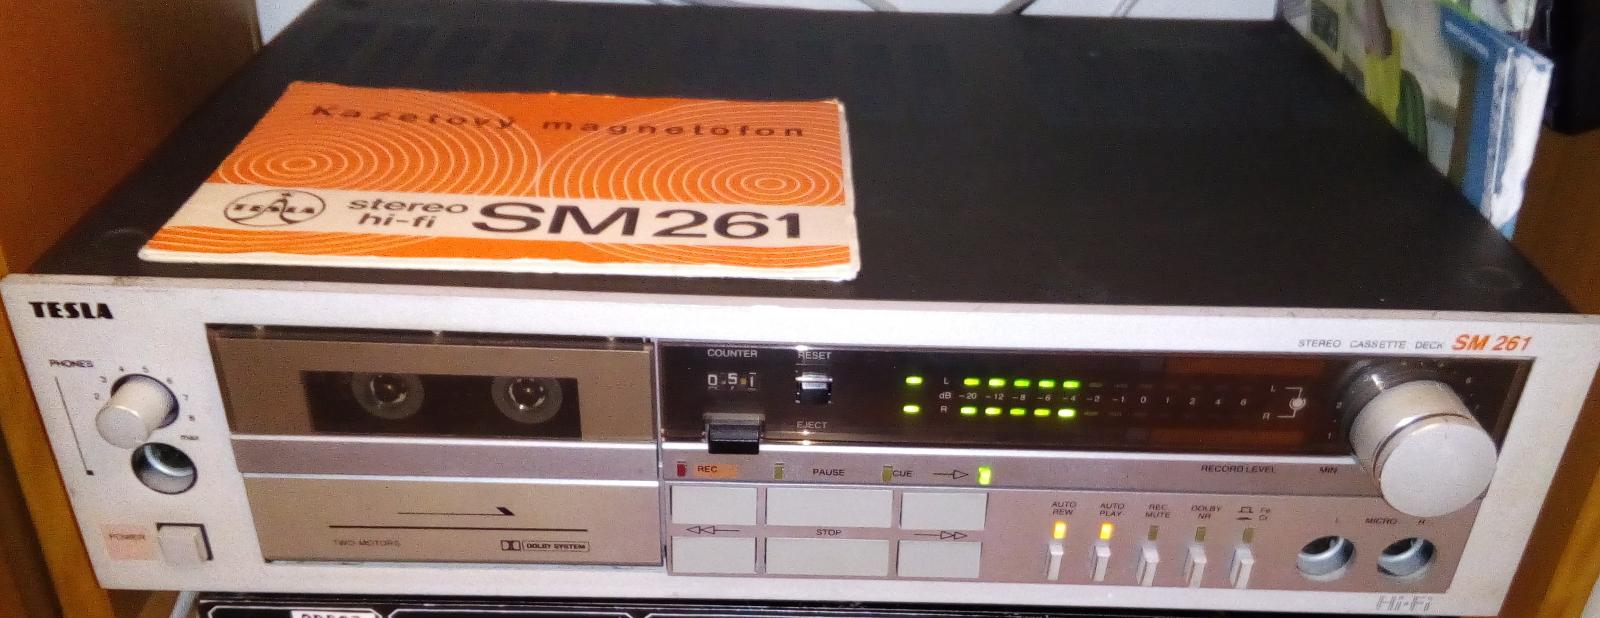 Kazetový magnetofon TESLA SM261 - TV, audio, video